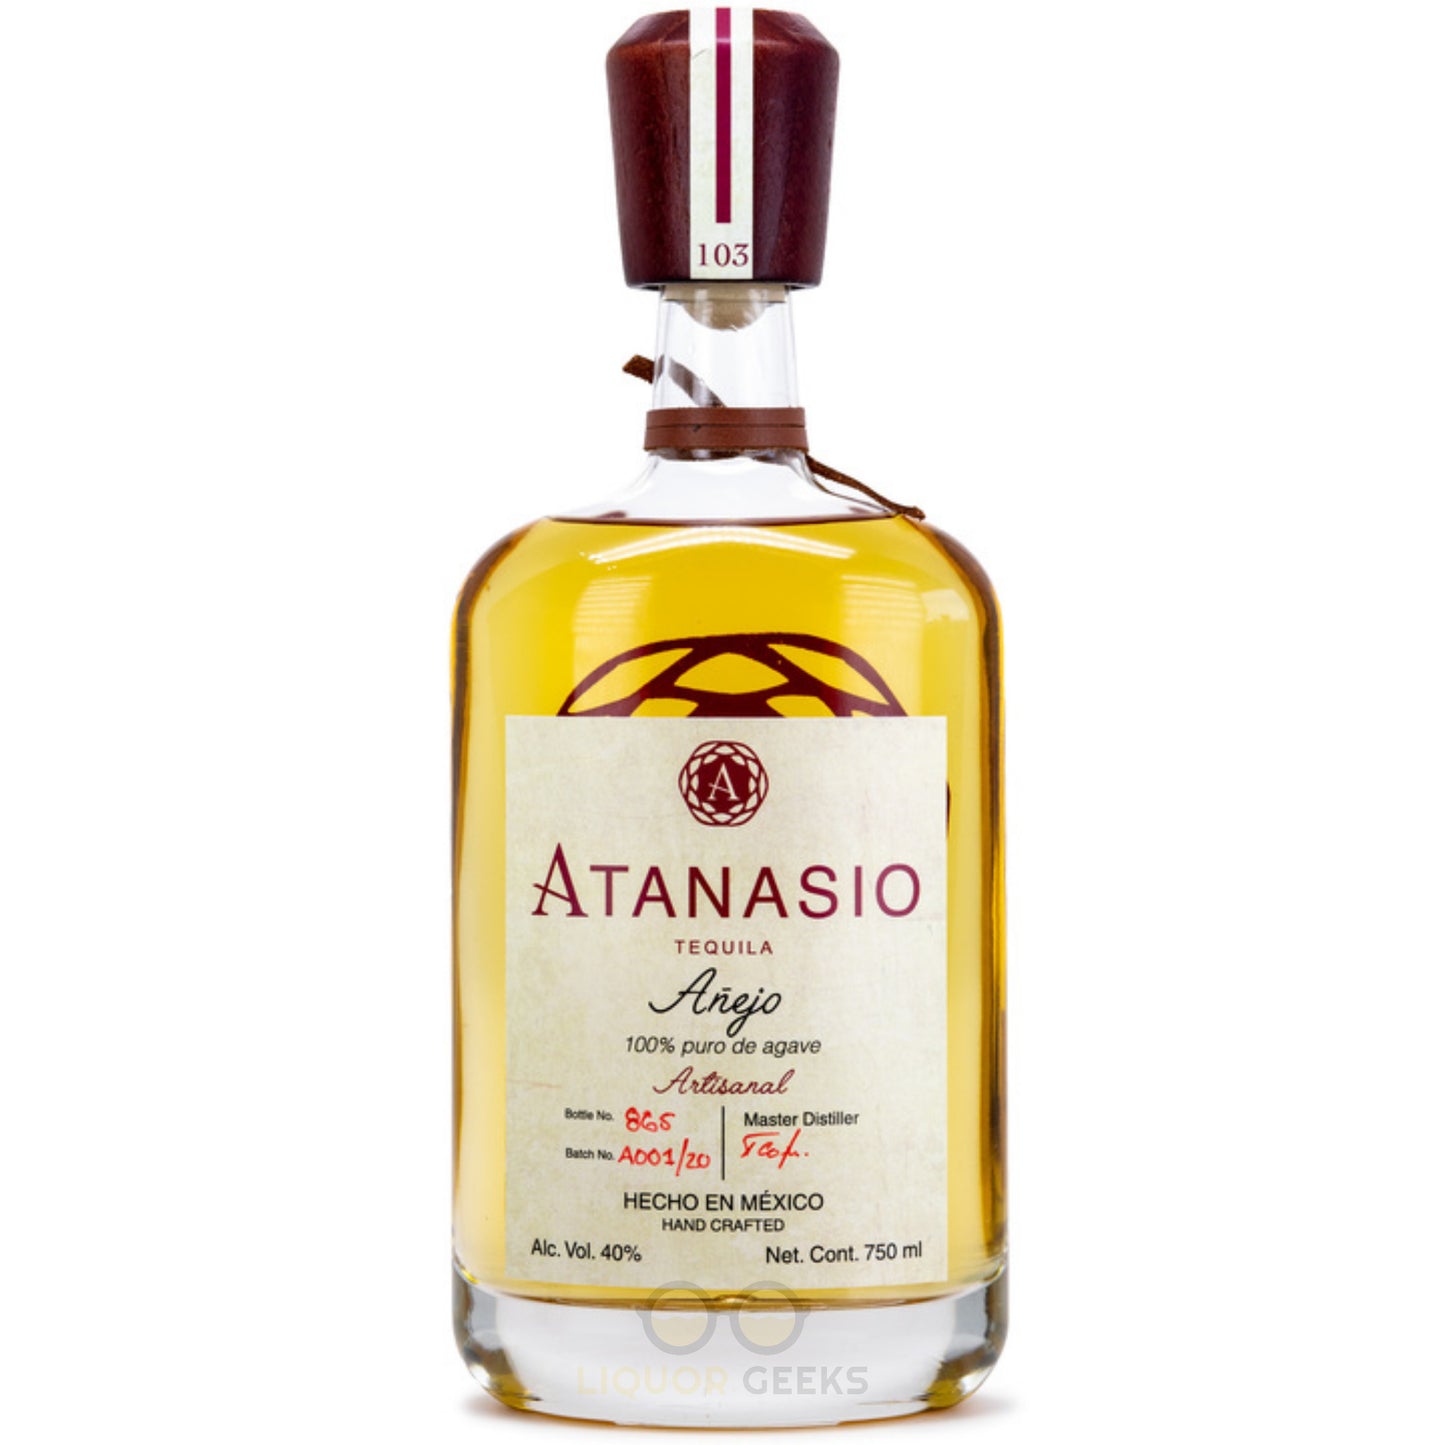 Atanasio Tequila Anejo